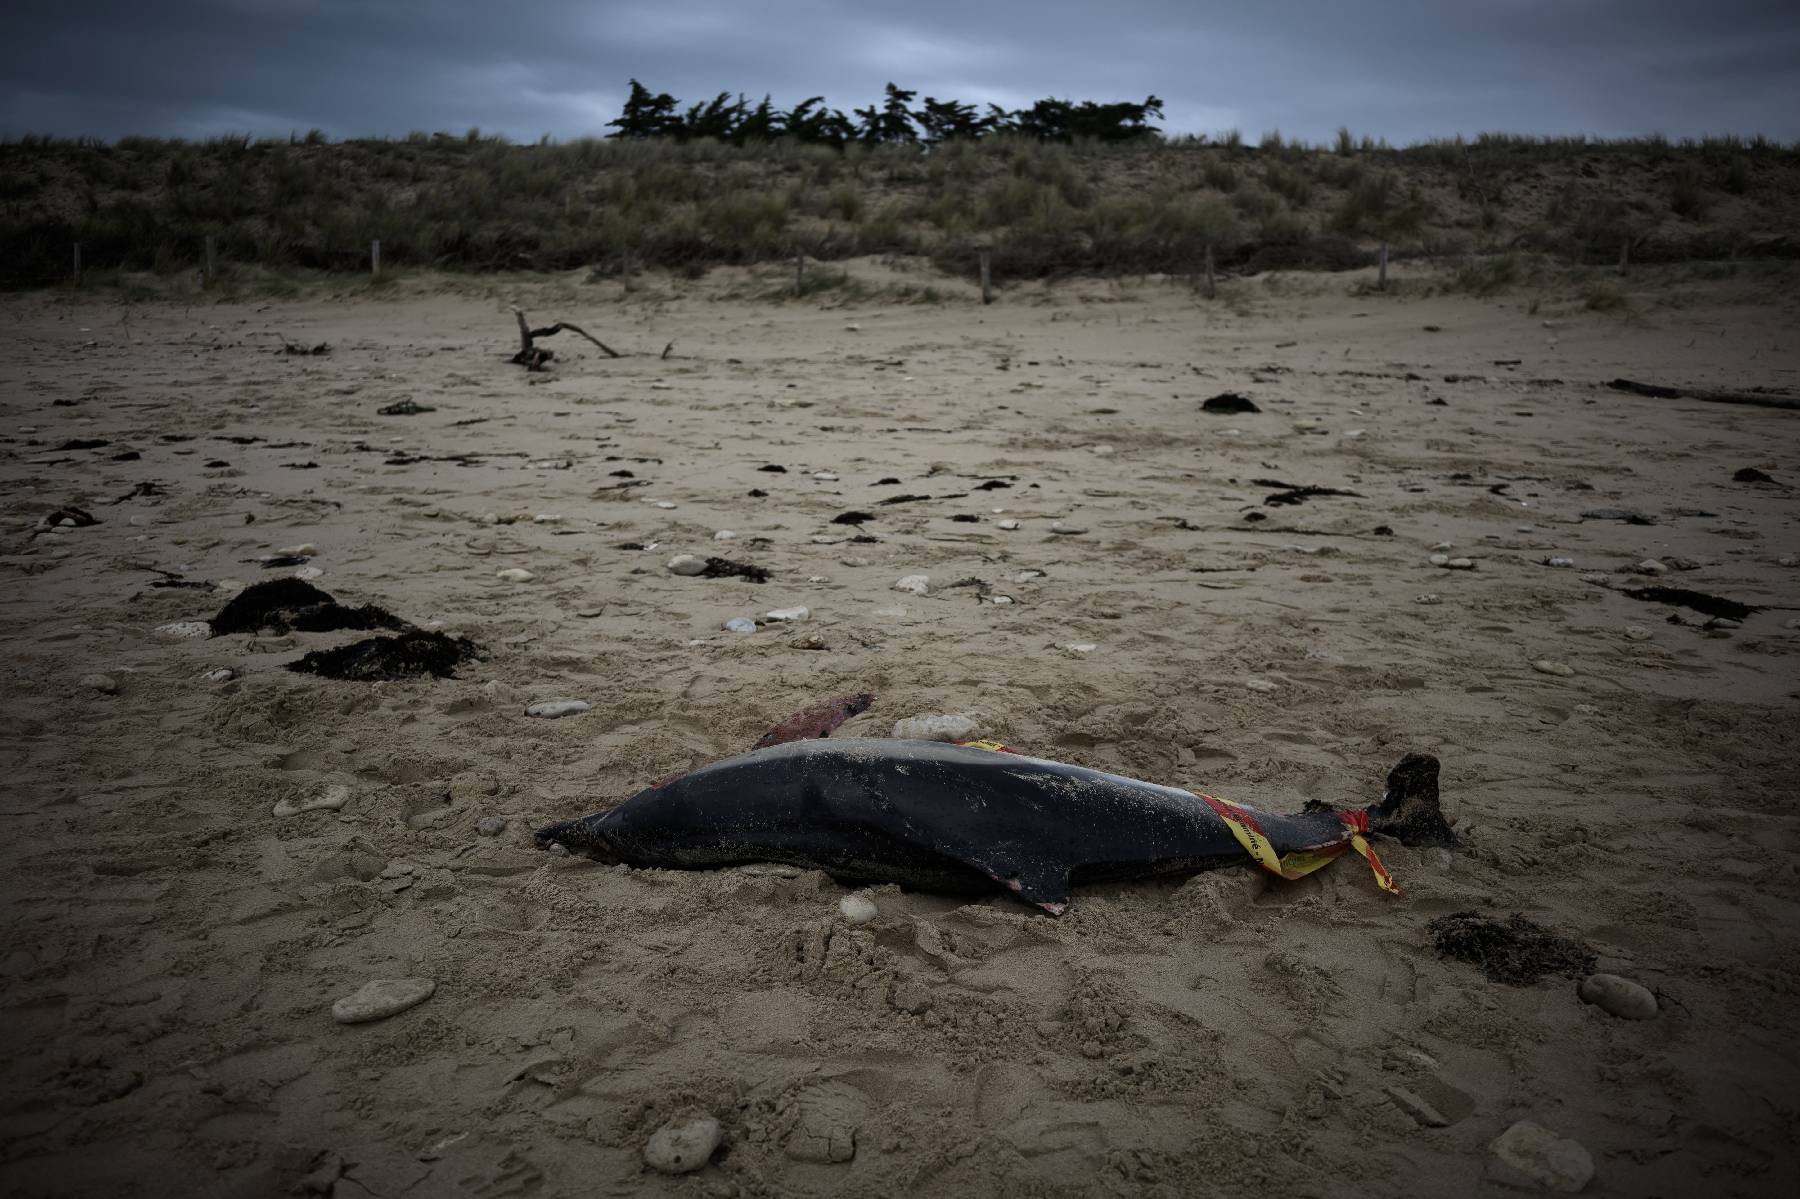 Plus de 900 dauphins échoués sur la côte atlantique cet hiver